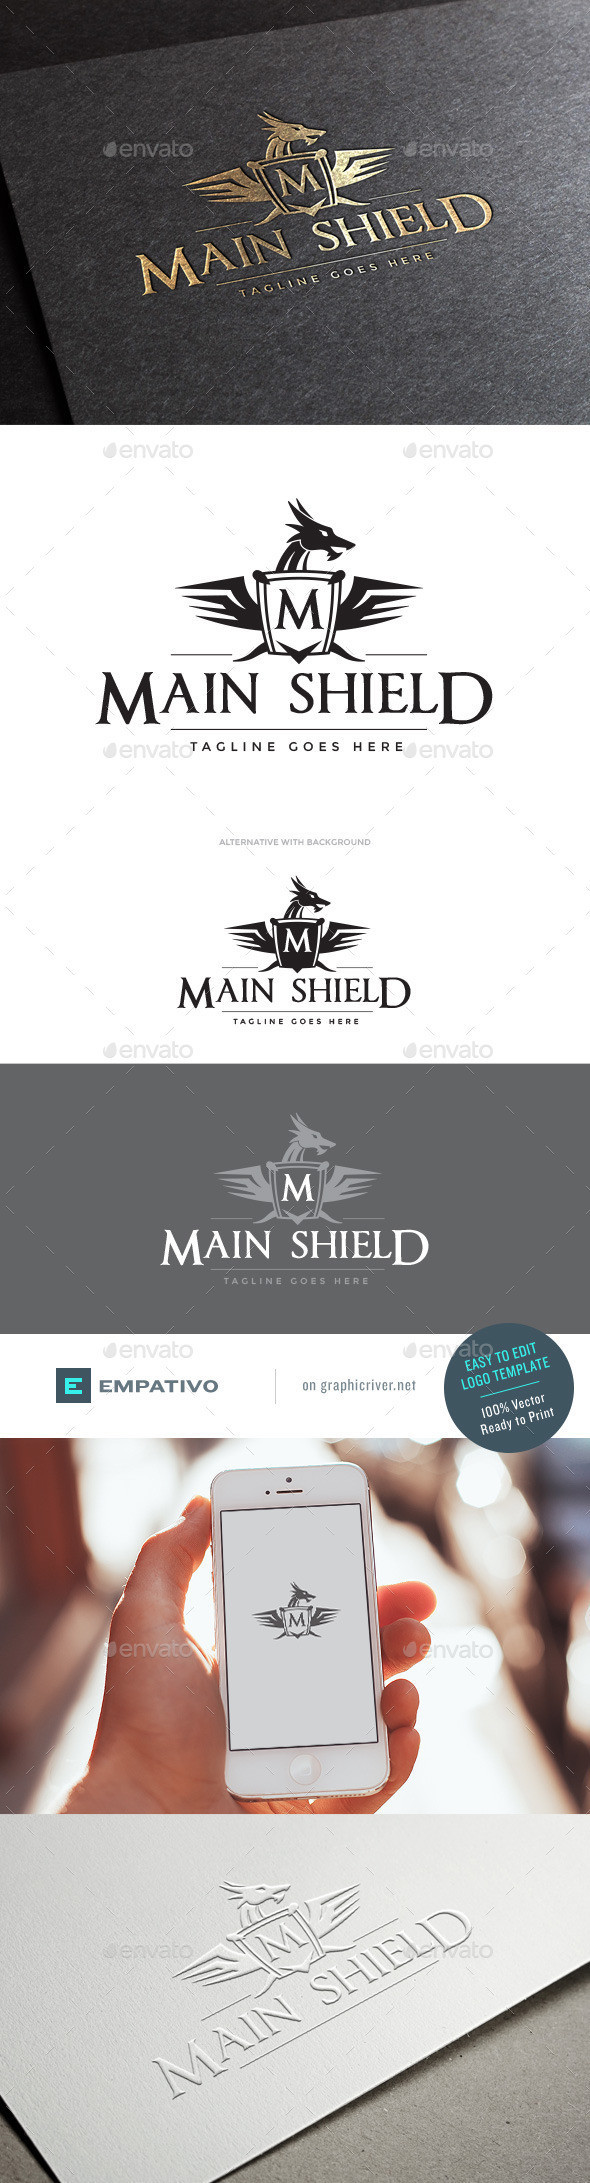 Main shield logo template